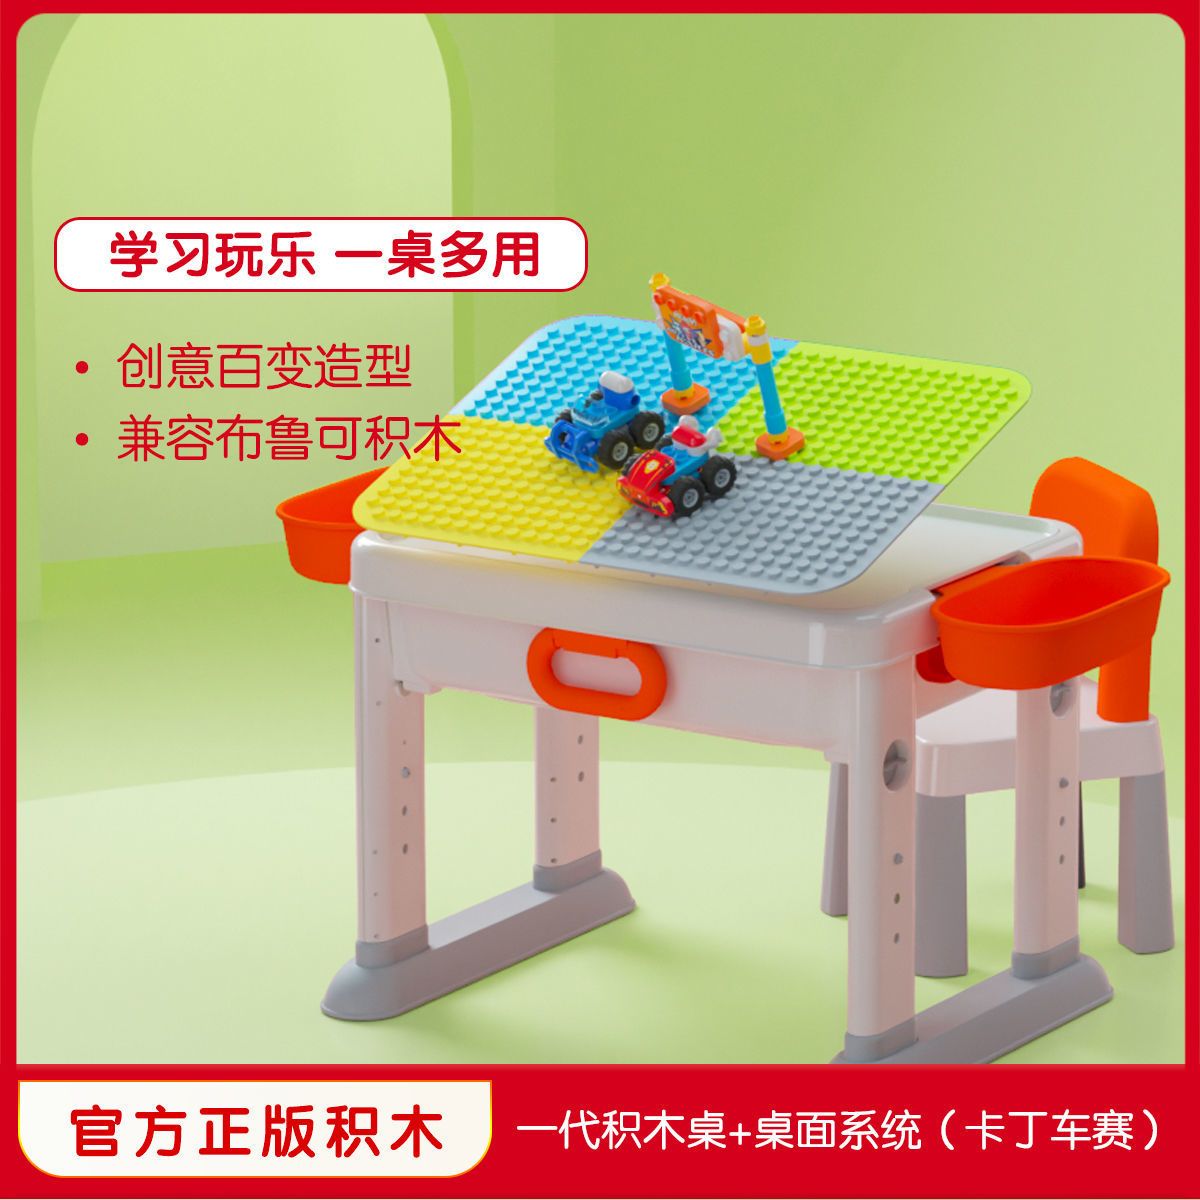 布鲁可多功能儿童积木桌大颗粒拼装玩具男孩女孩新年礼物3-6岁